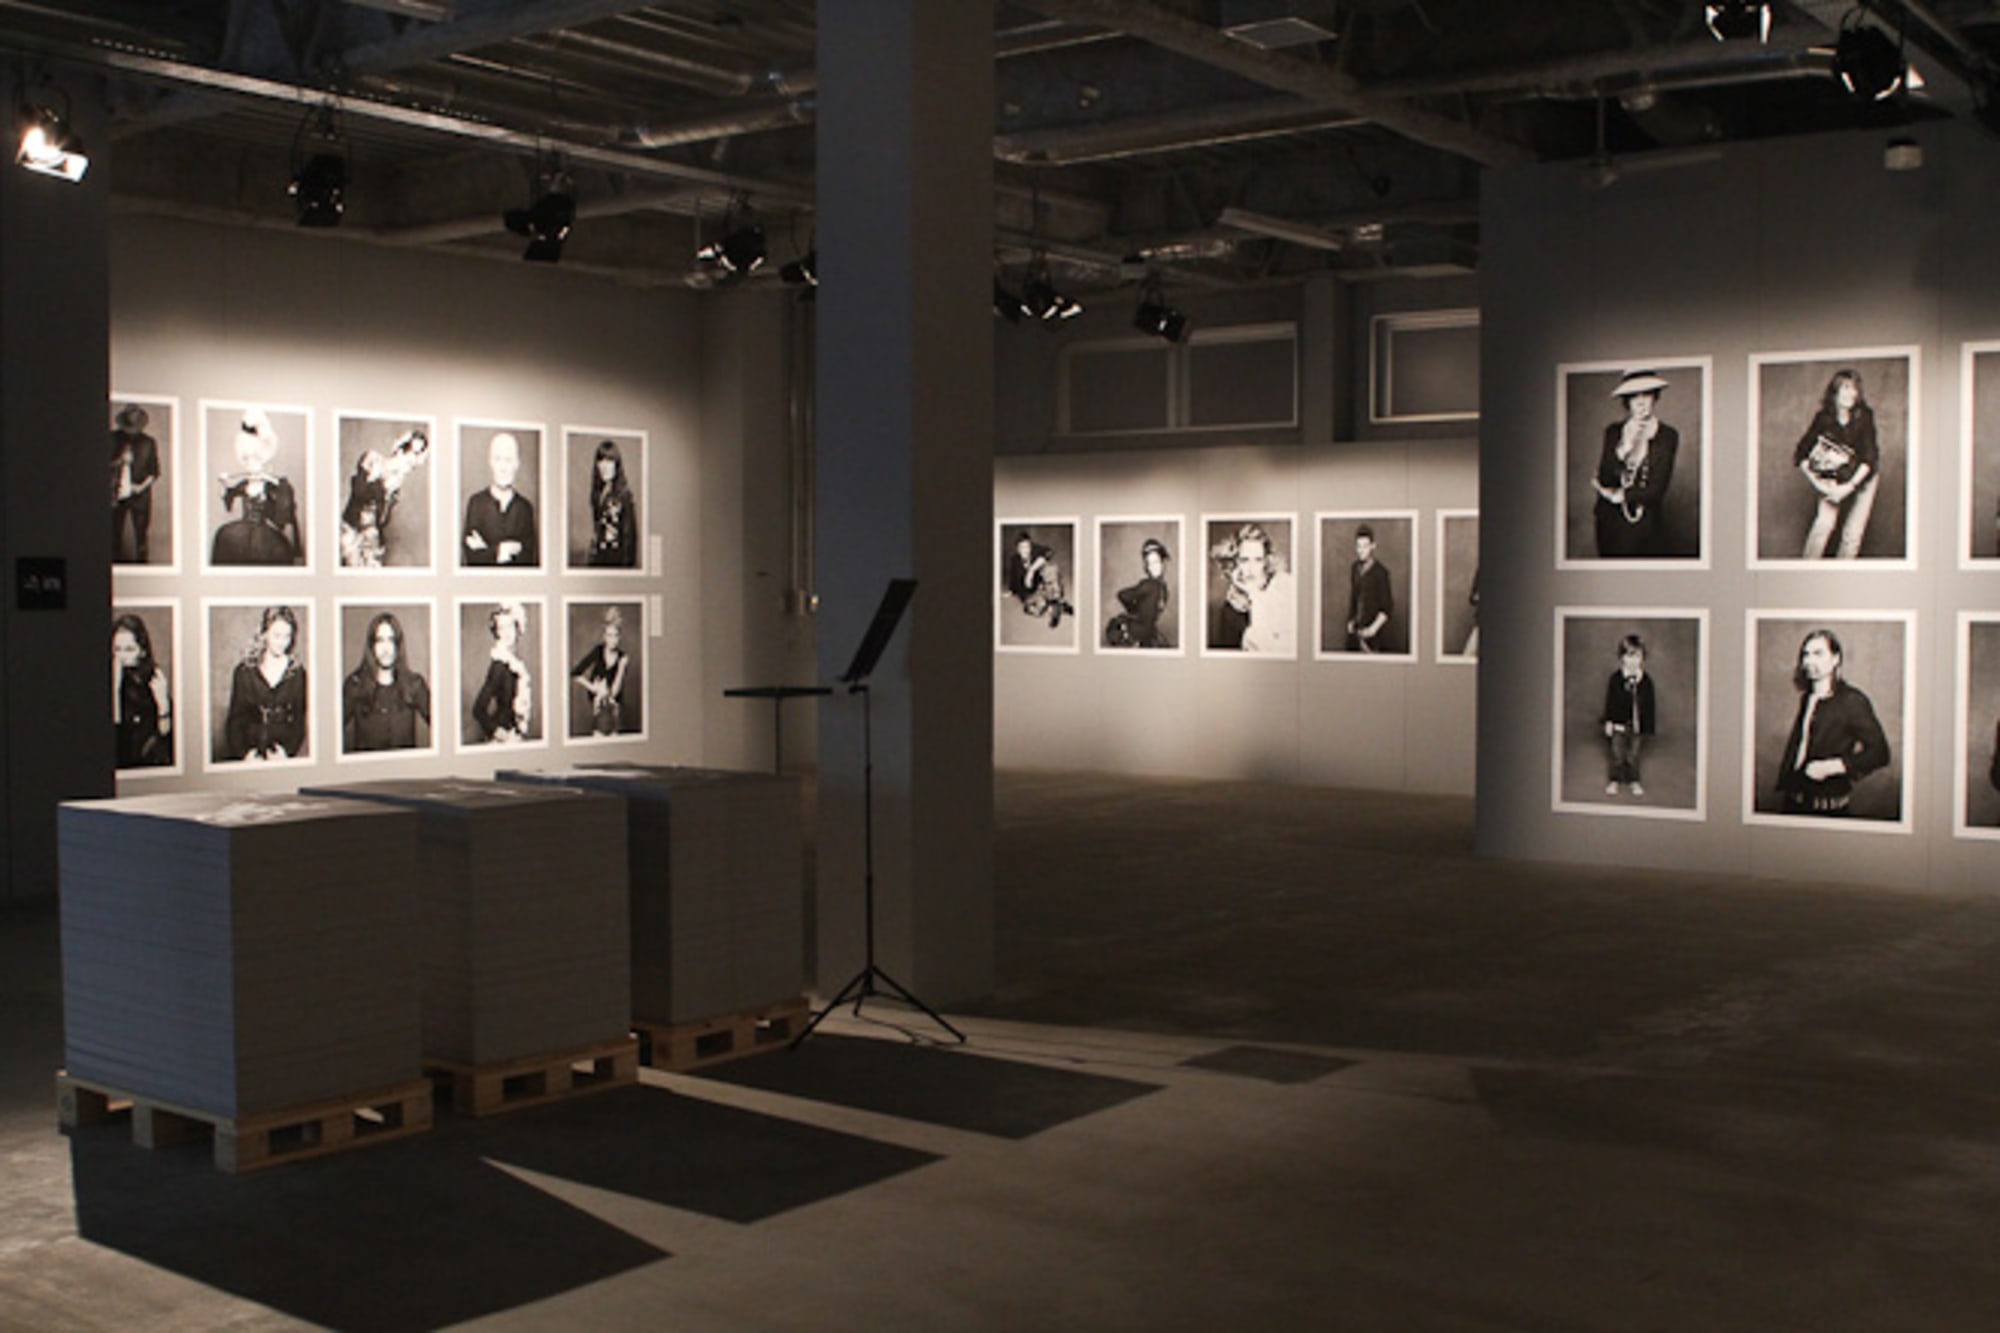 CHANELブラックジャケットの写真展、東京とオンラインで開催